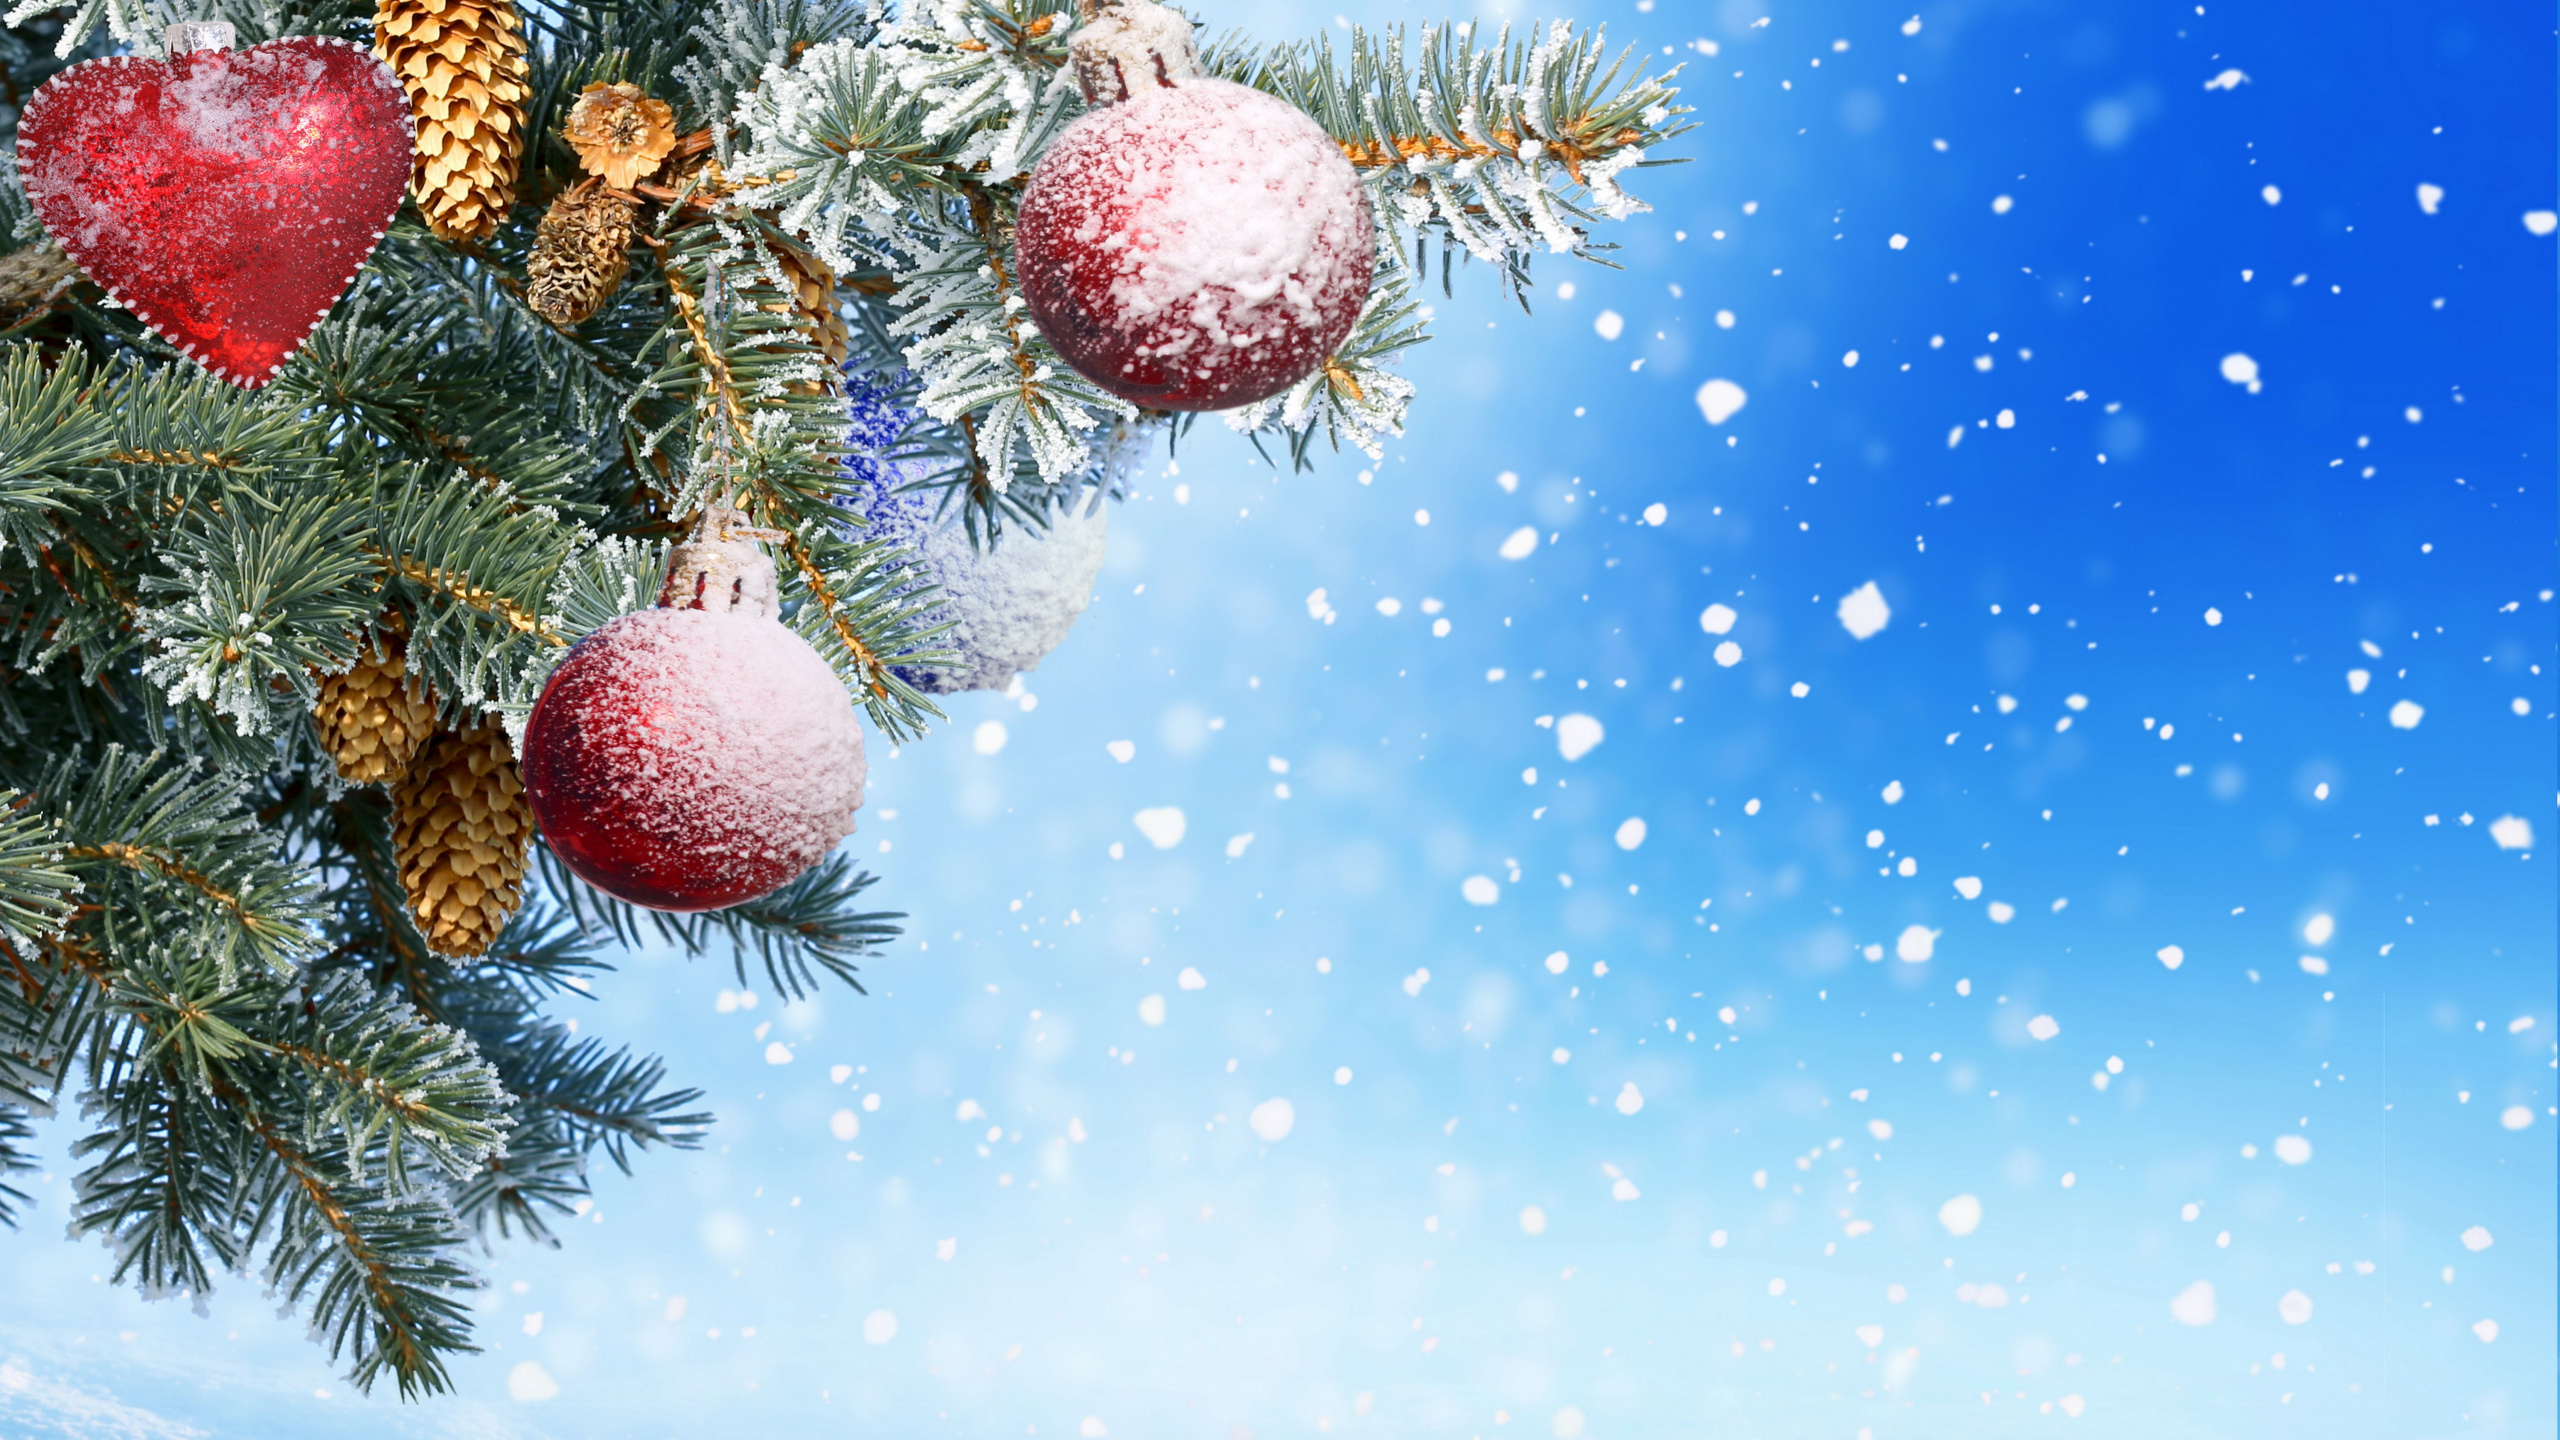 新的一年, 圣诞节那天, 圣诞节的装饰品, Fir, 松的家庭 壁纸 2560x1440 允许